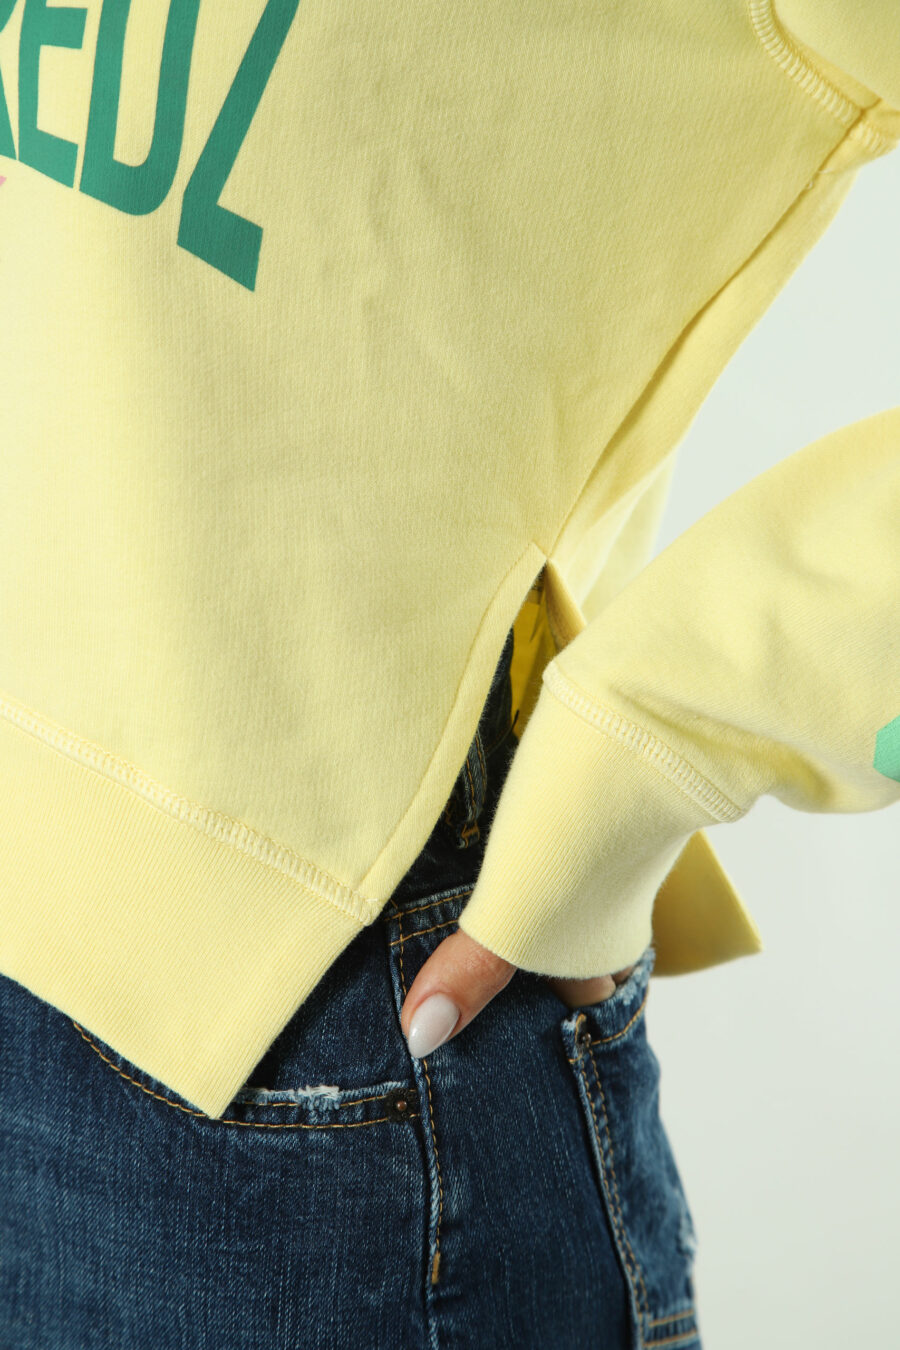 Sweatshirt amarela com maxilogo verde e texto nas mangas - 8052134554463 3